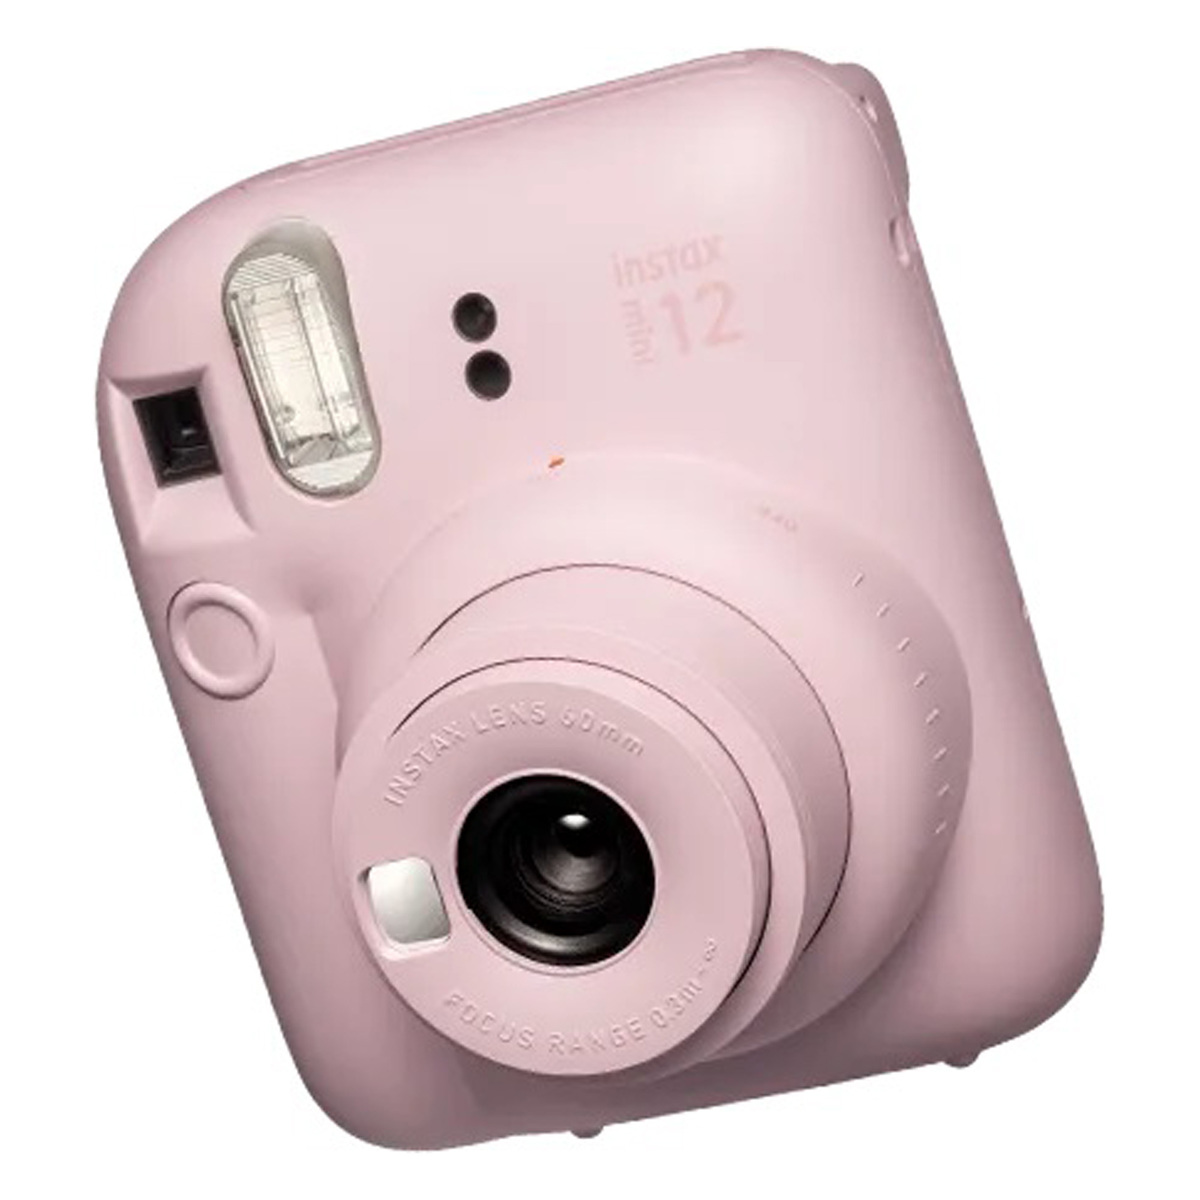 Fujifilm Instax Mini 12 Instant Film Camera, Blossom Pink Online